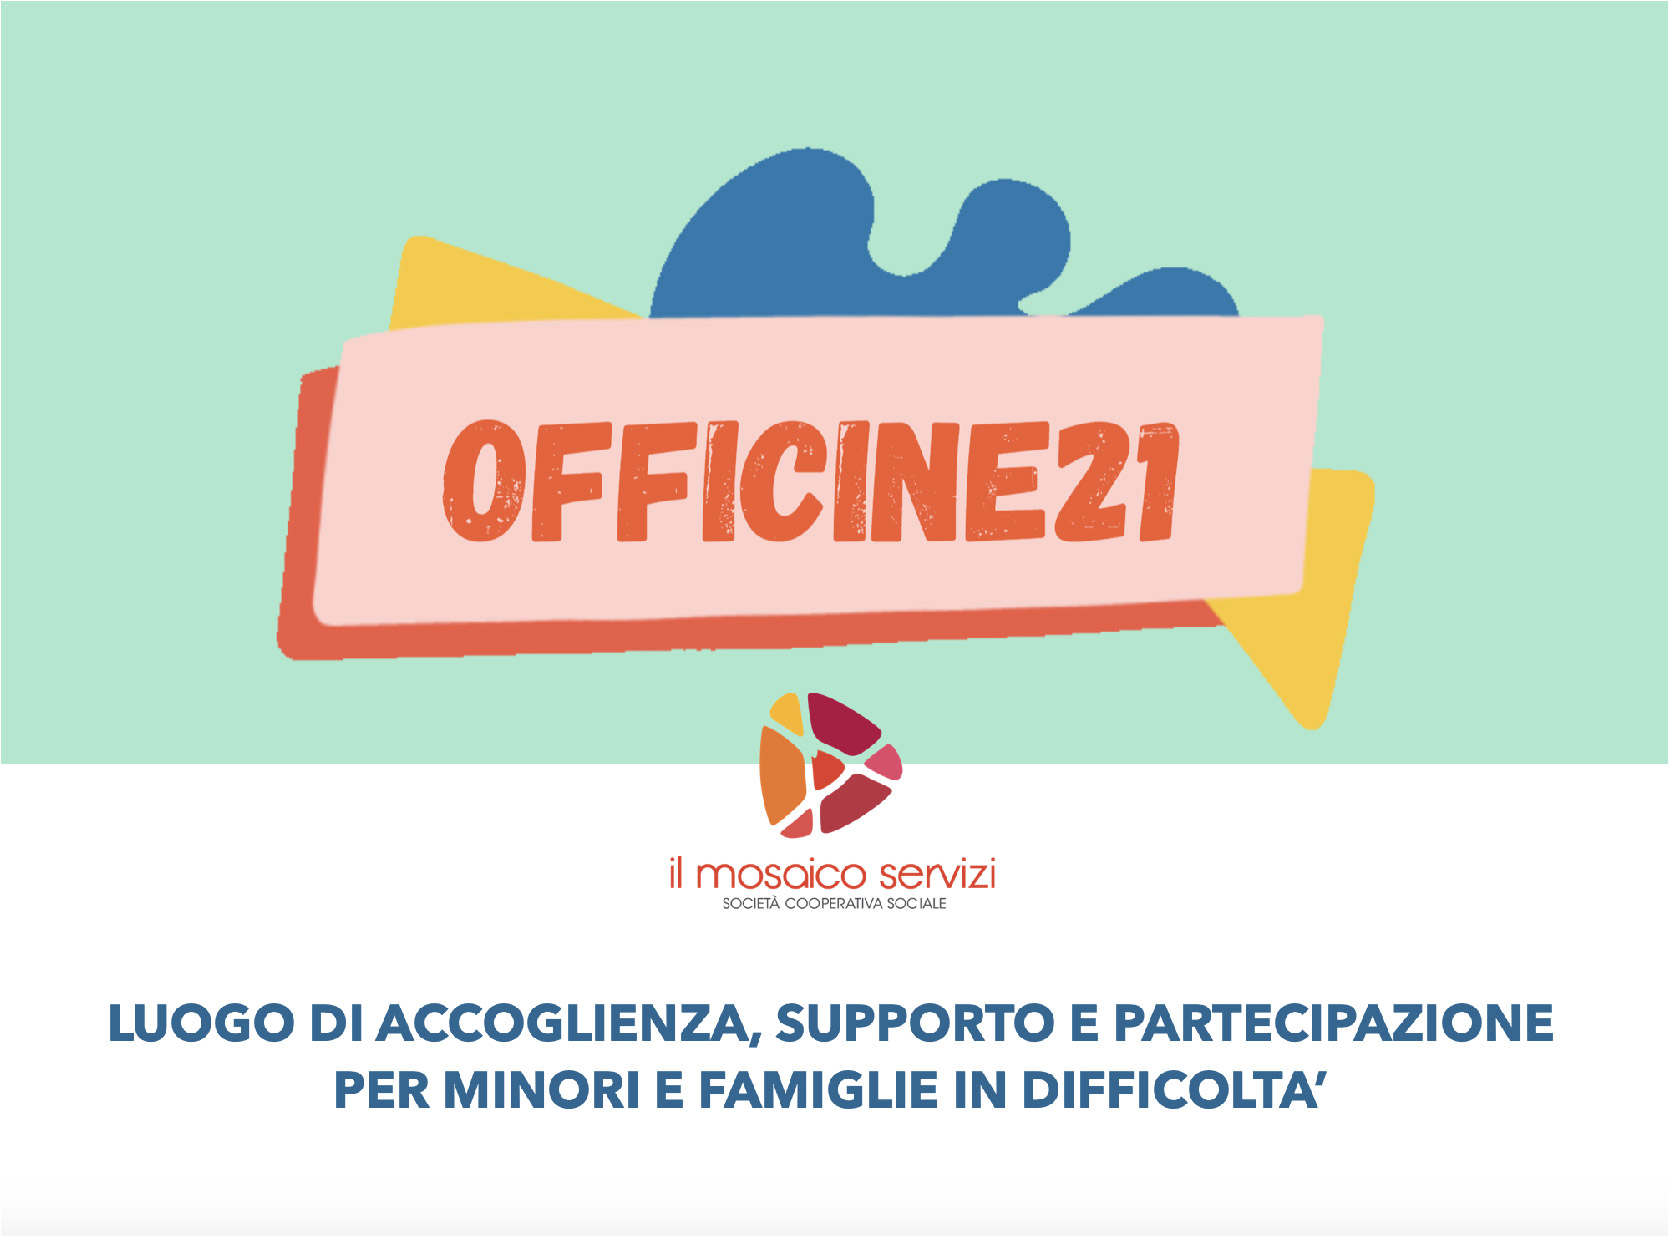 OFFICINE21 - Luogo di accoglienza, supporto e partecipazione per minori e famiglie in difficoltà